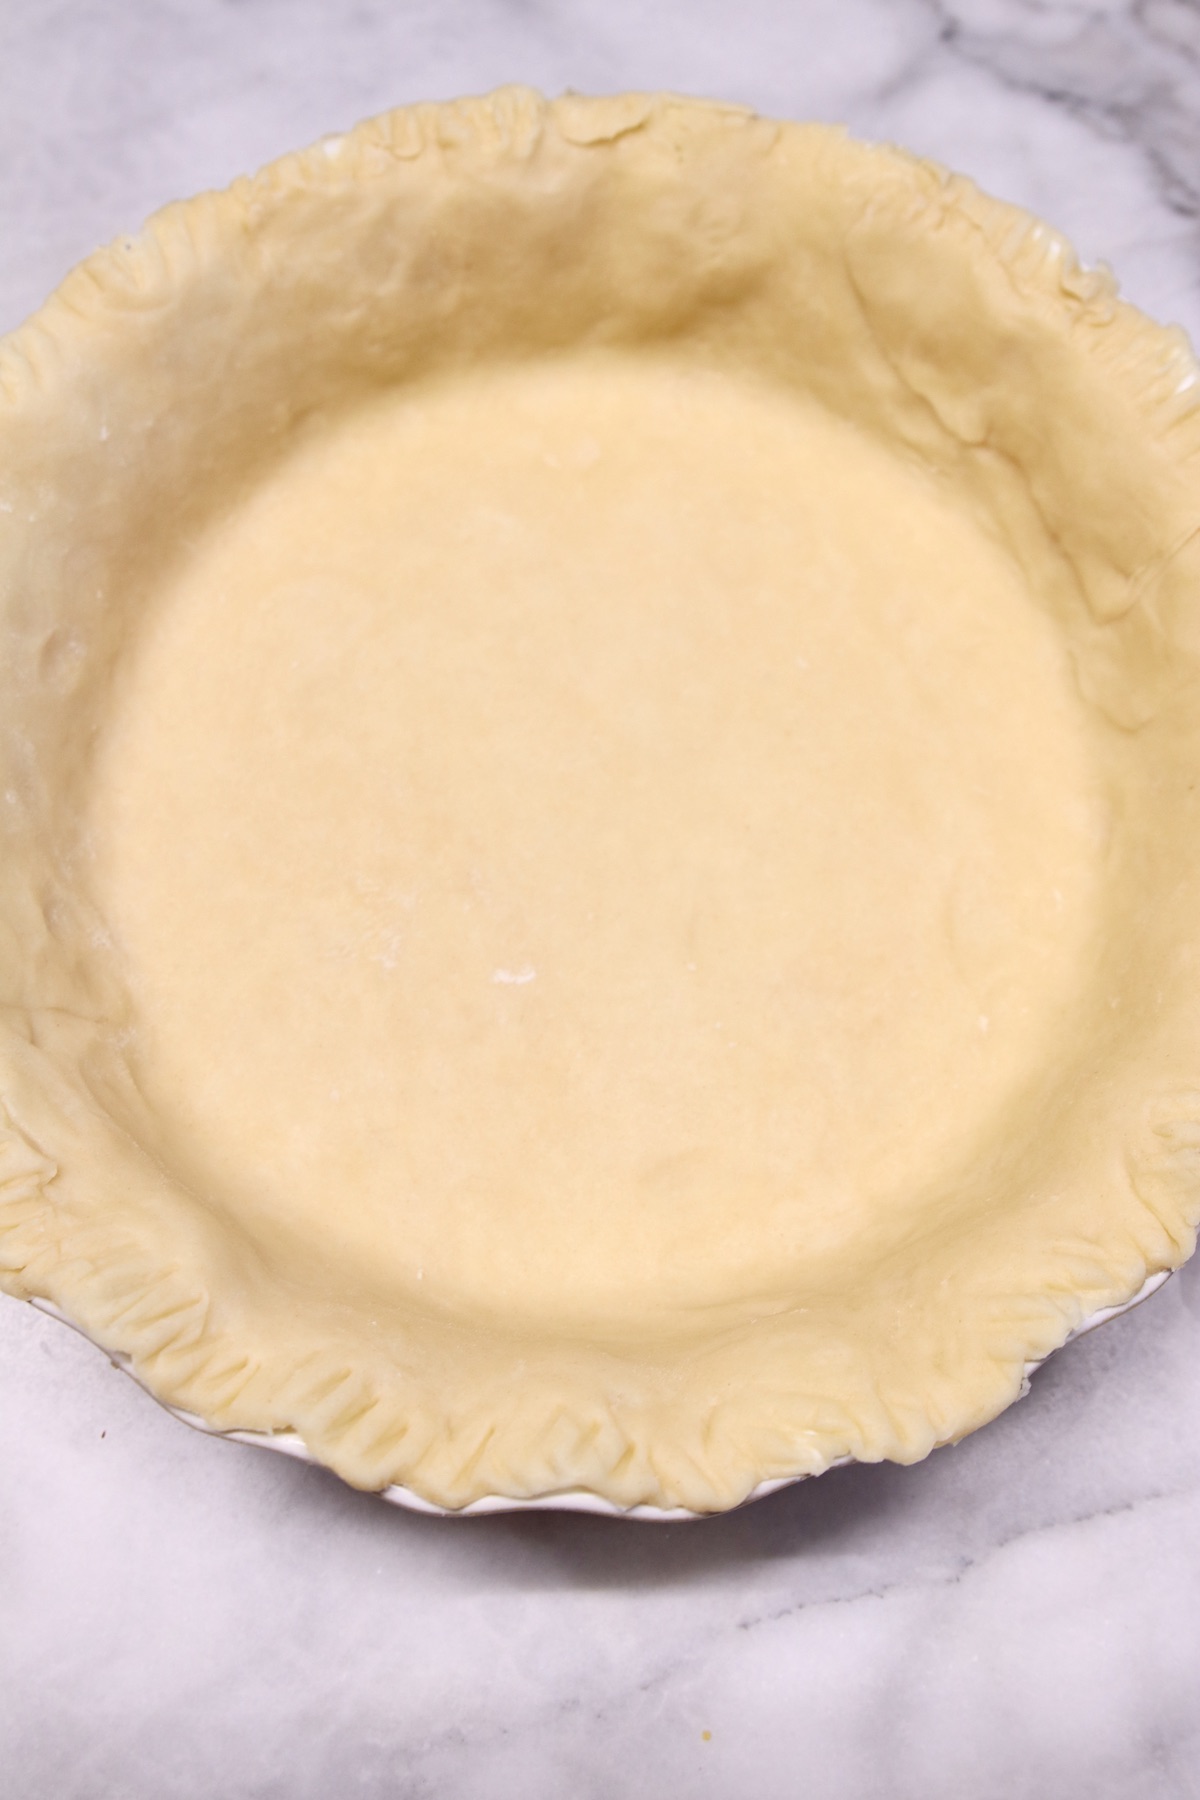 pie crust in a pie plate